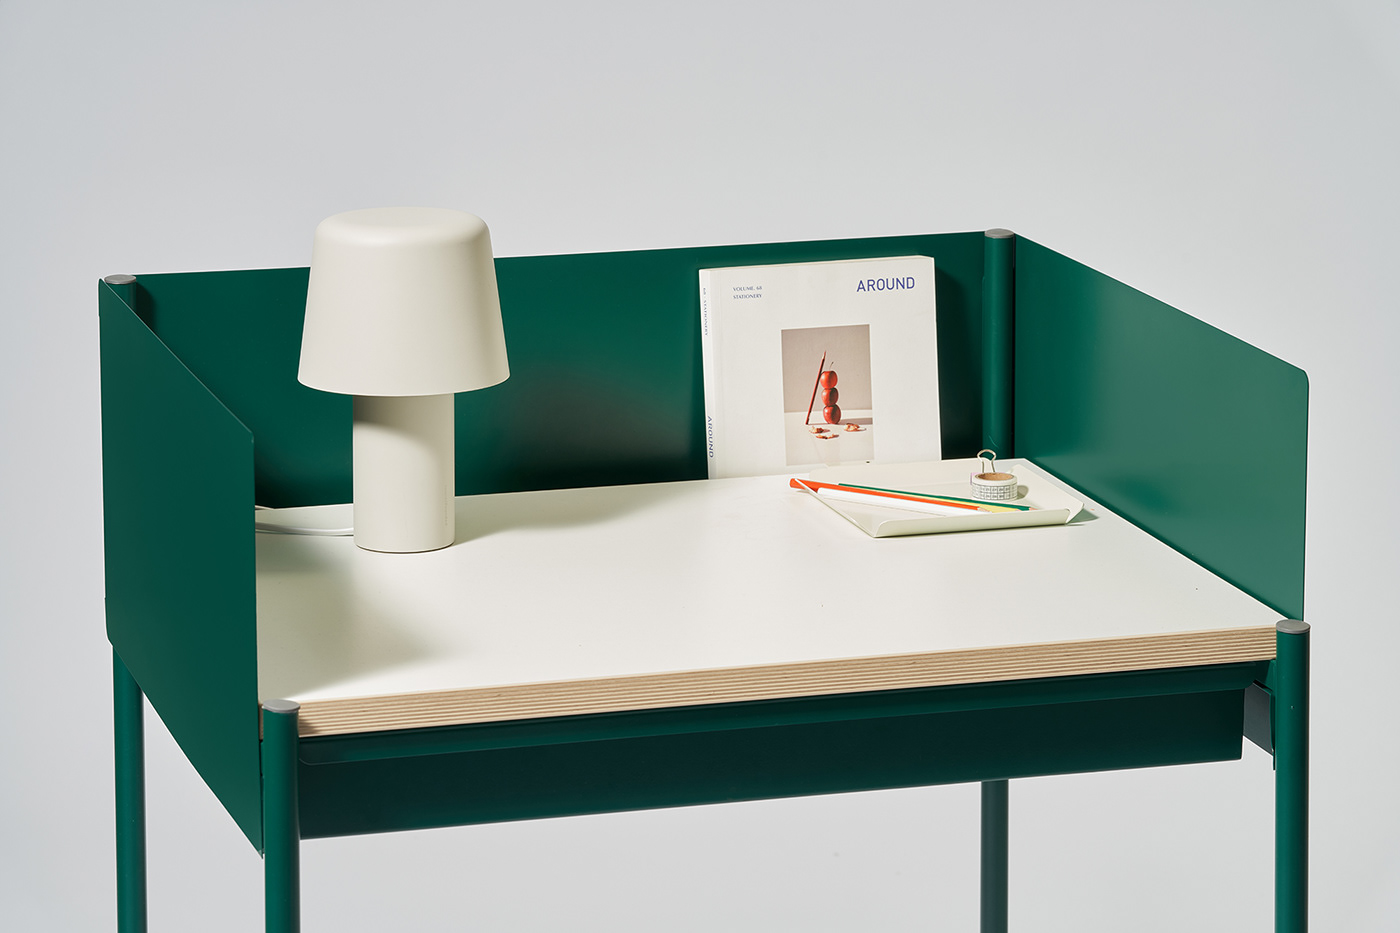 product design  furniture interior design  desk furniture design  industrial design foundfounded 산업디자인